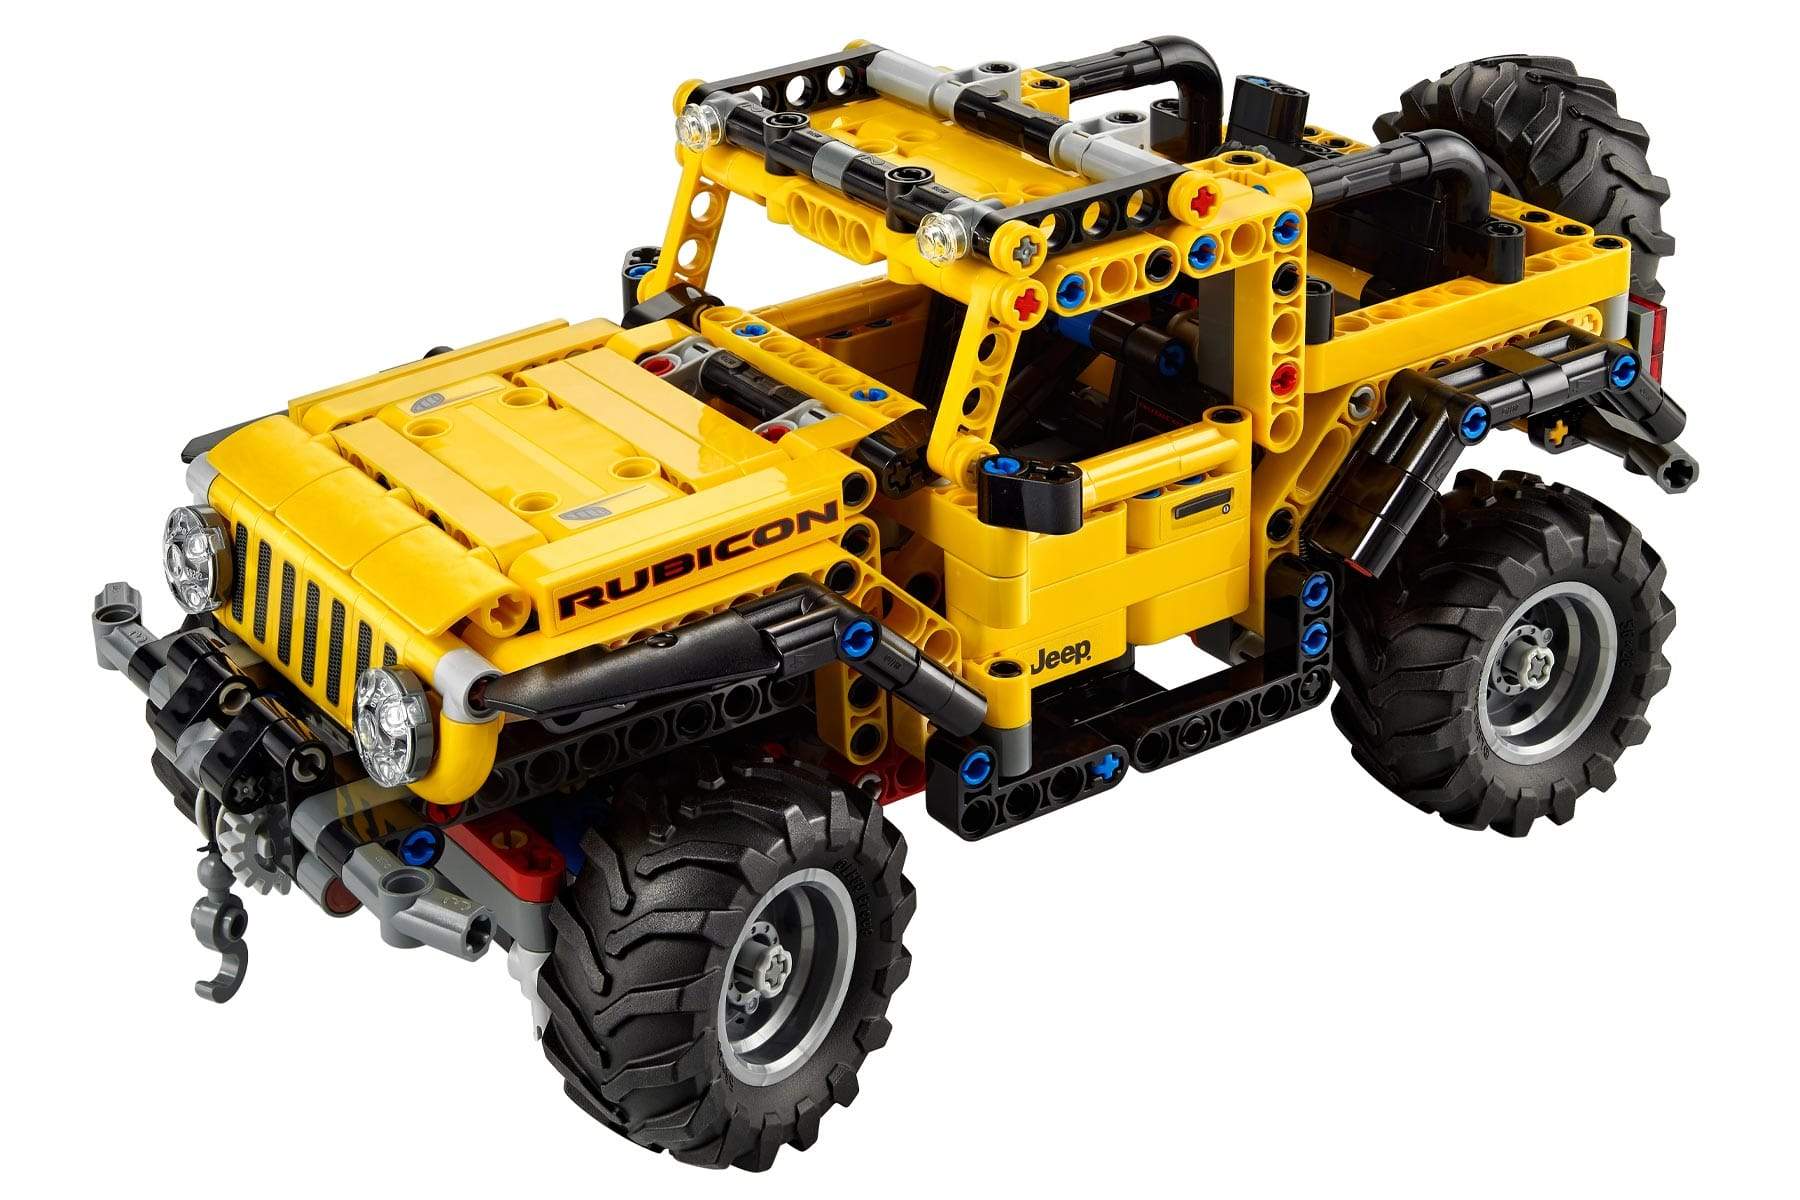 LEGO Technic Jeep® Wrangler 42122